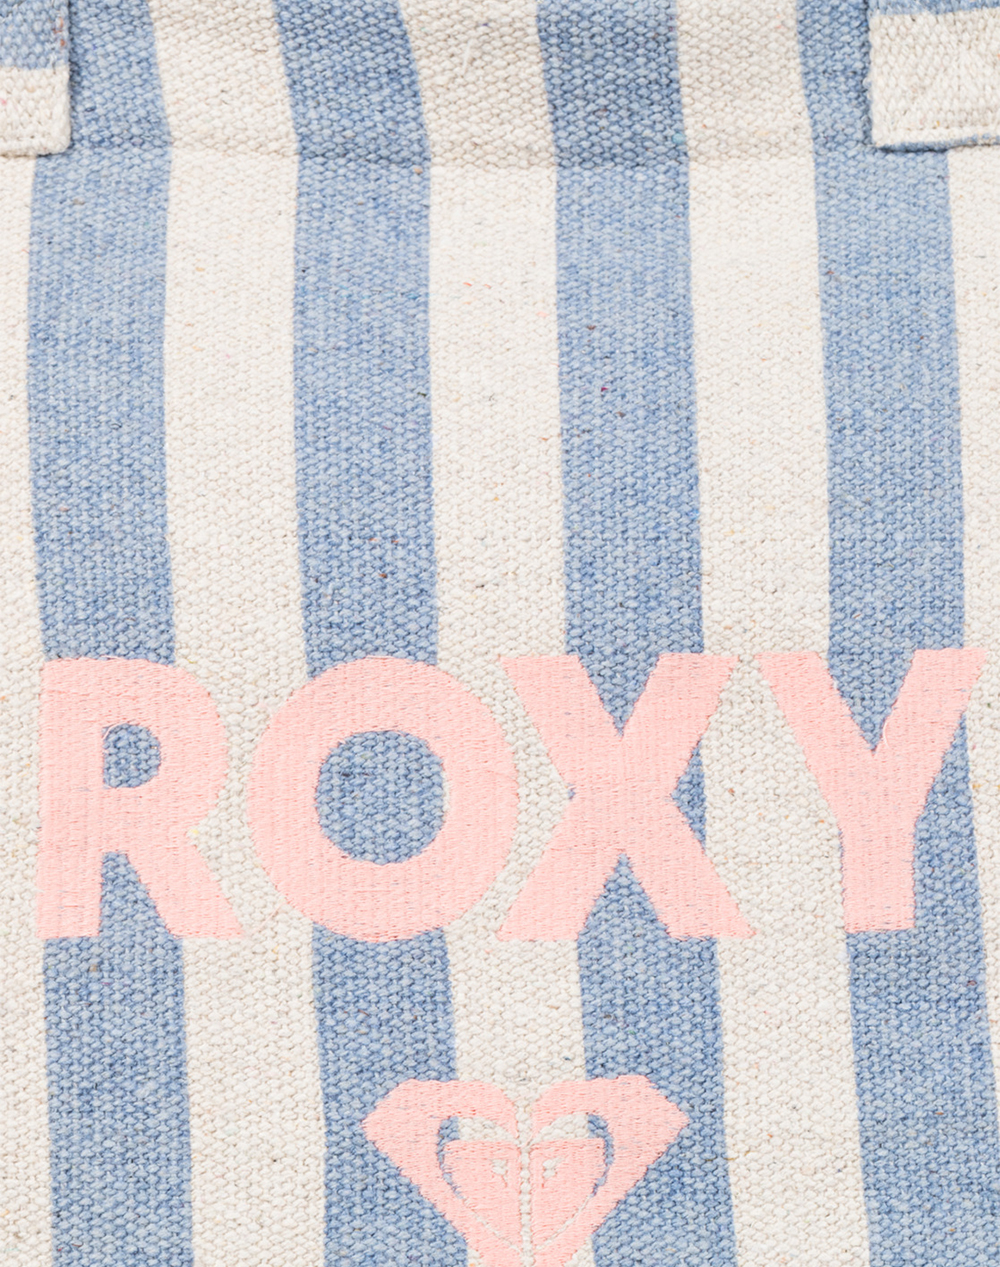 ROXY FAIRY BEACH ΤΣΑΝΤΑ ΓΥΝΑΙΚΕΙΟ (Διαστάσεις: 37 x 42 x 17 εκ)